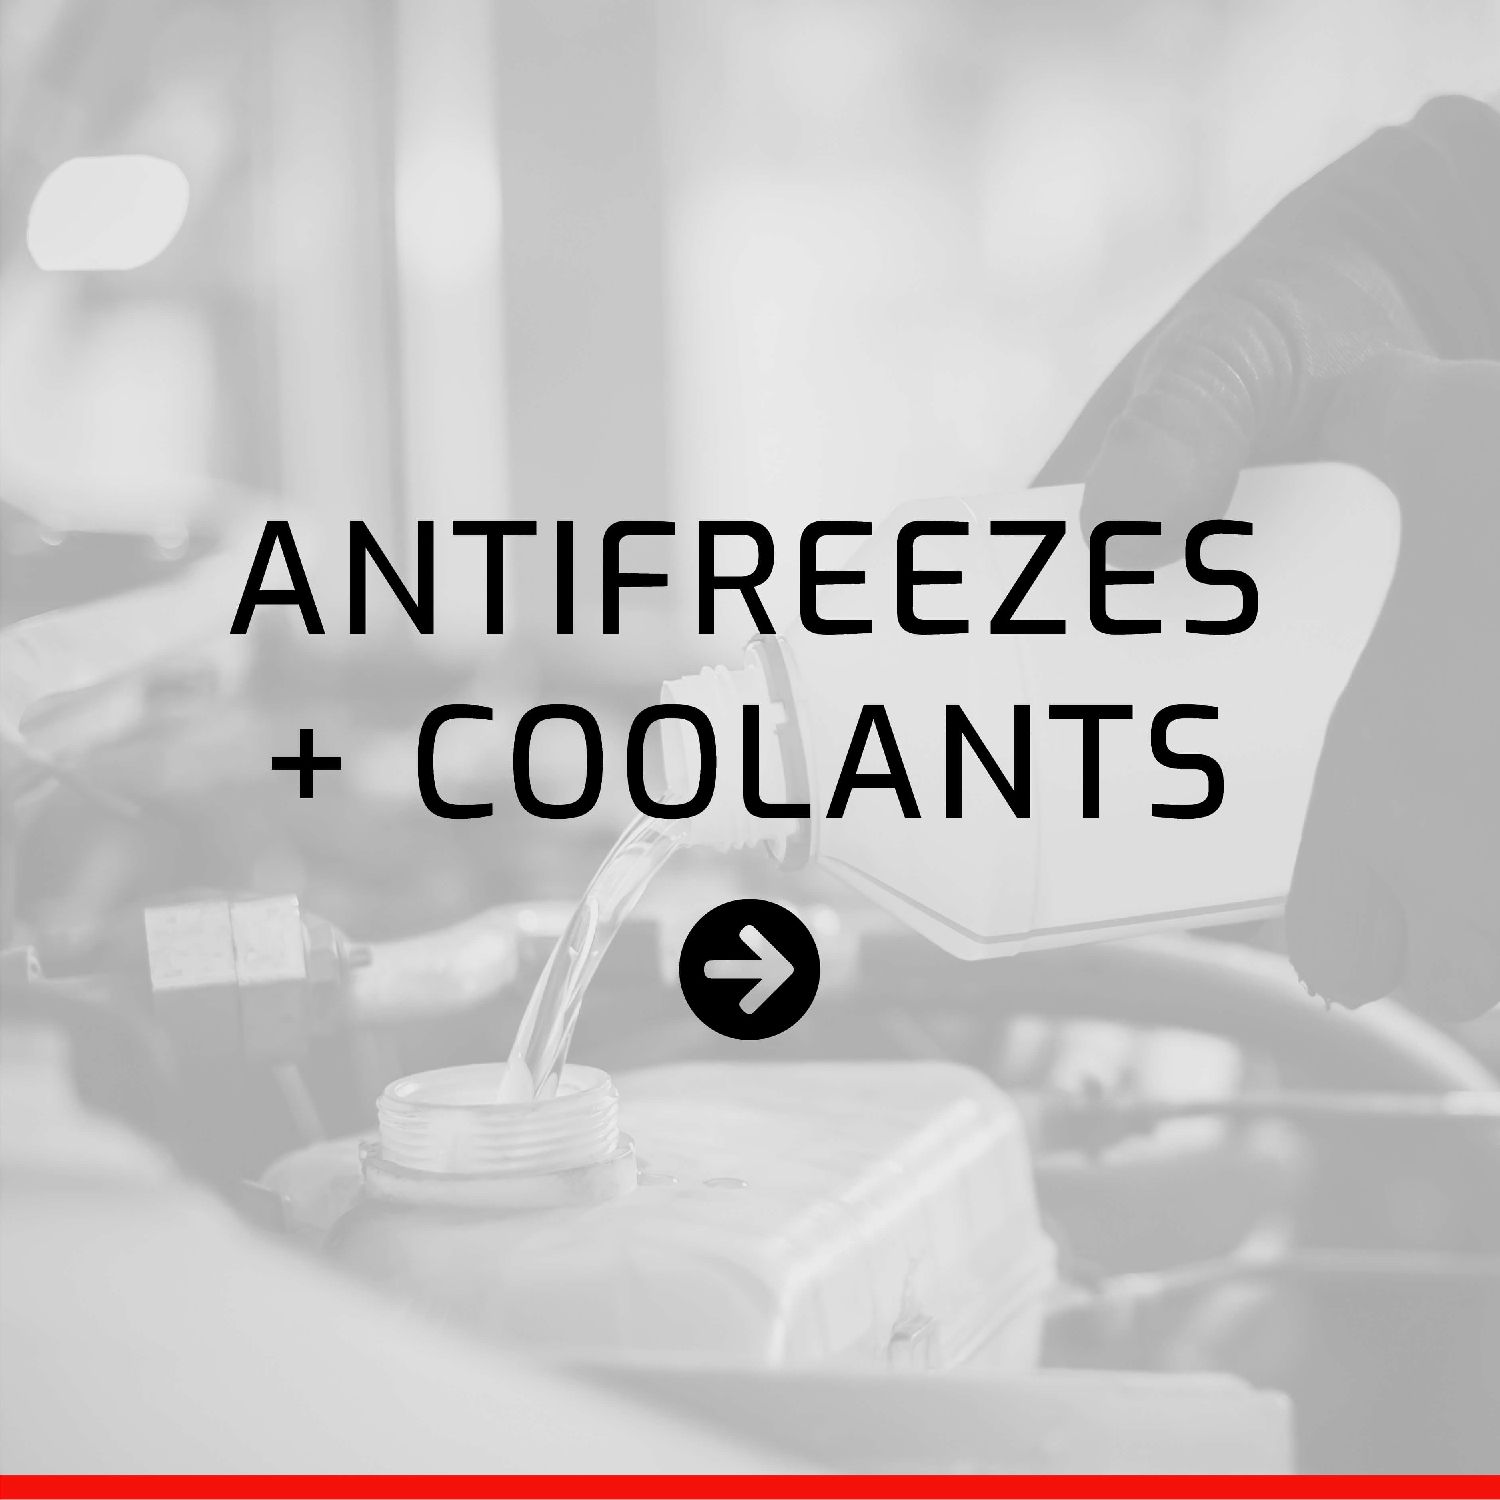 Antifreezes + Coolants